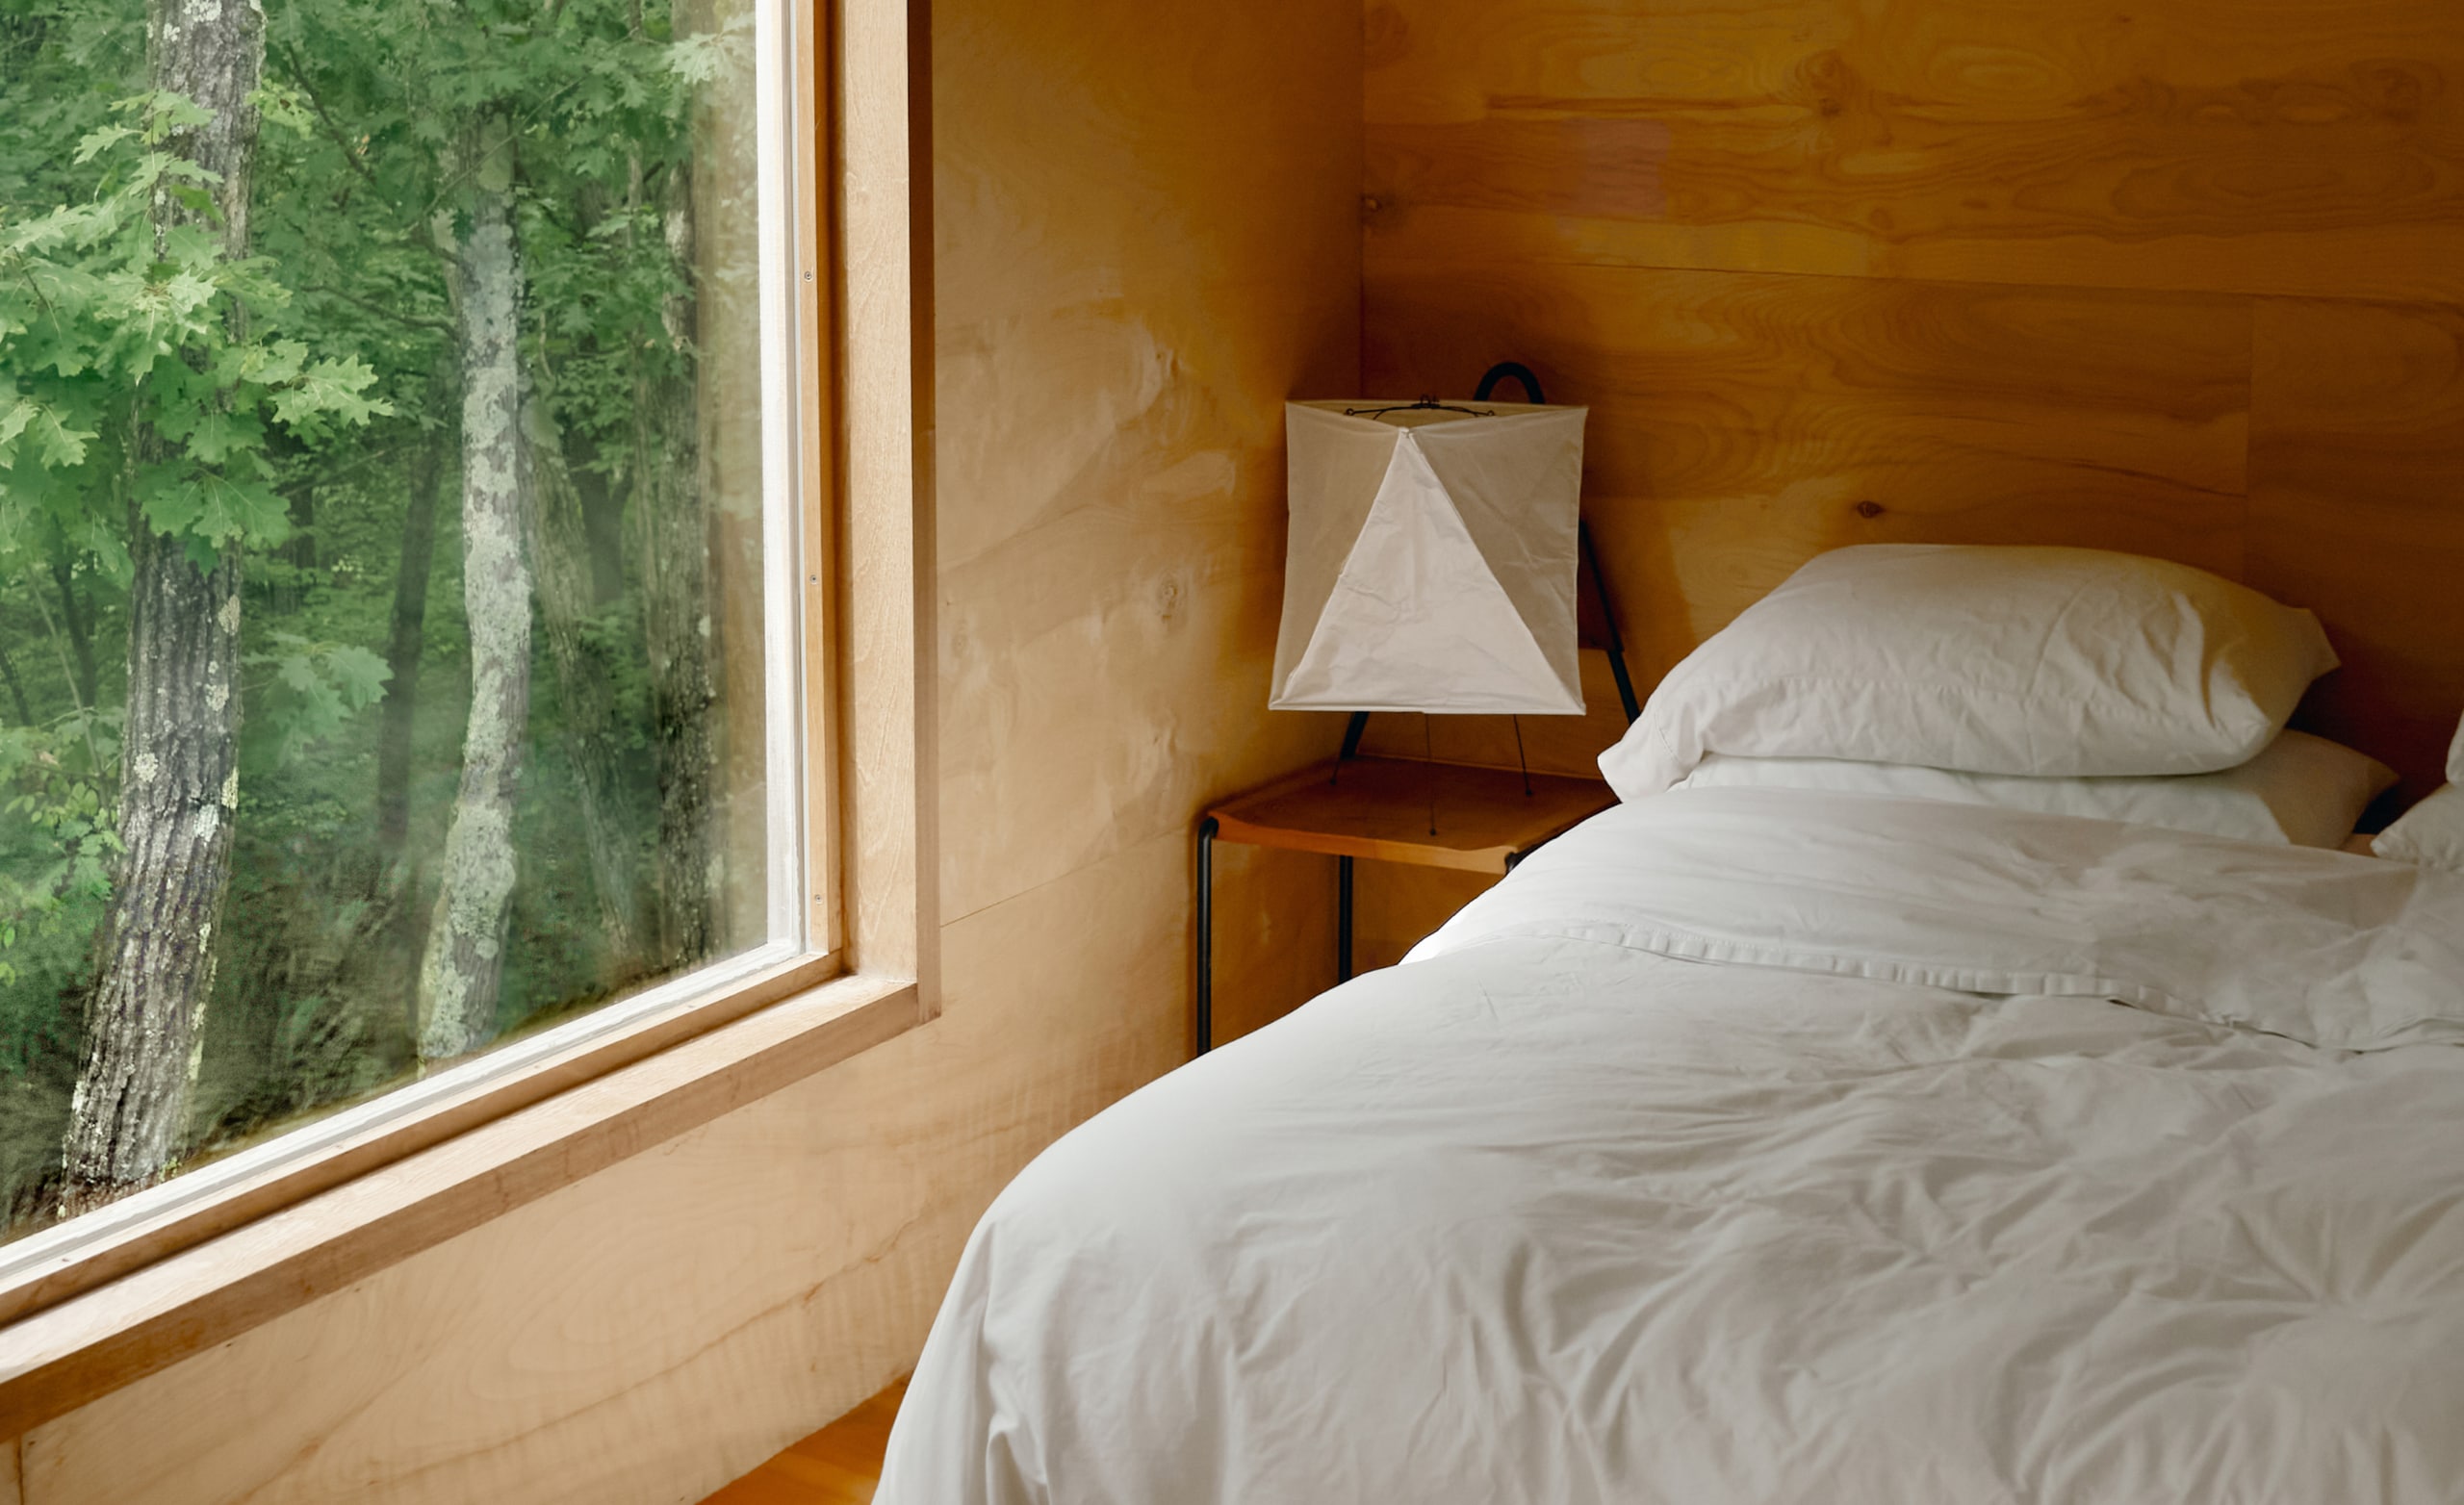 Ein Schlafzimmer mit weißen Laken auf einem frisch gemachten Bett und einem großen Fenster mit Bäumen davor.